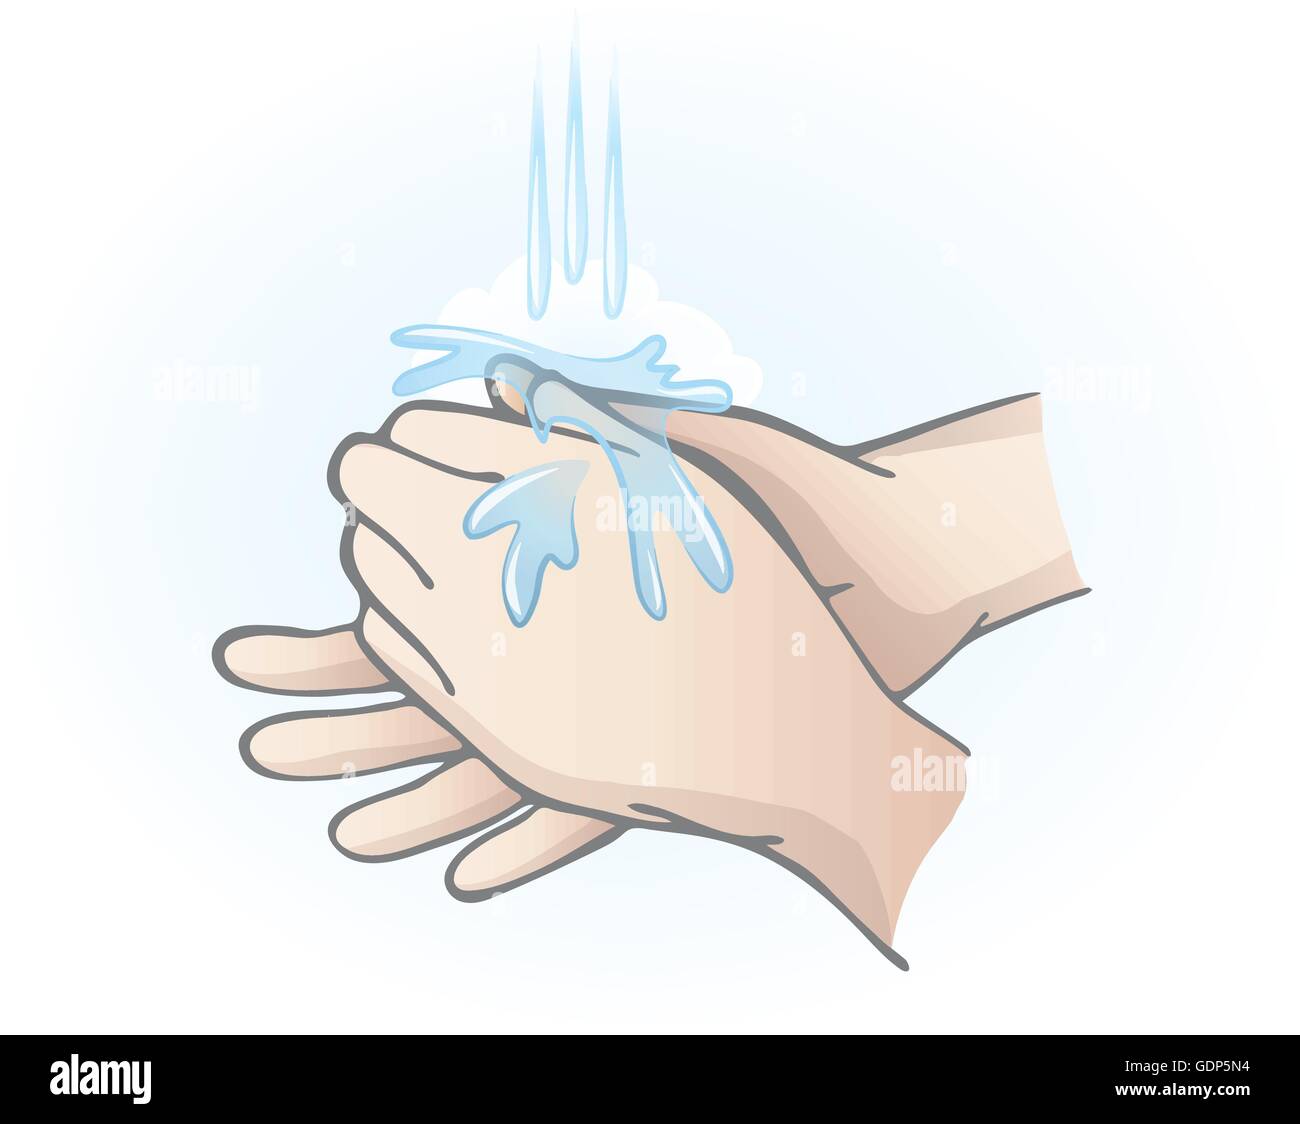 Hände waschen mit Wasser, Hygiene und Gesundheit Konzepte Stock Vektor